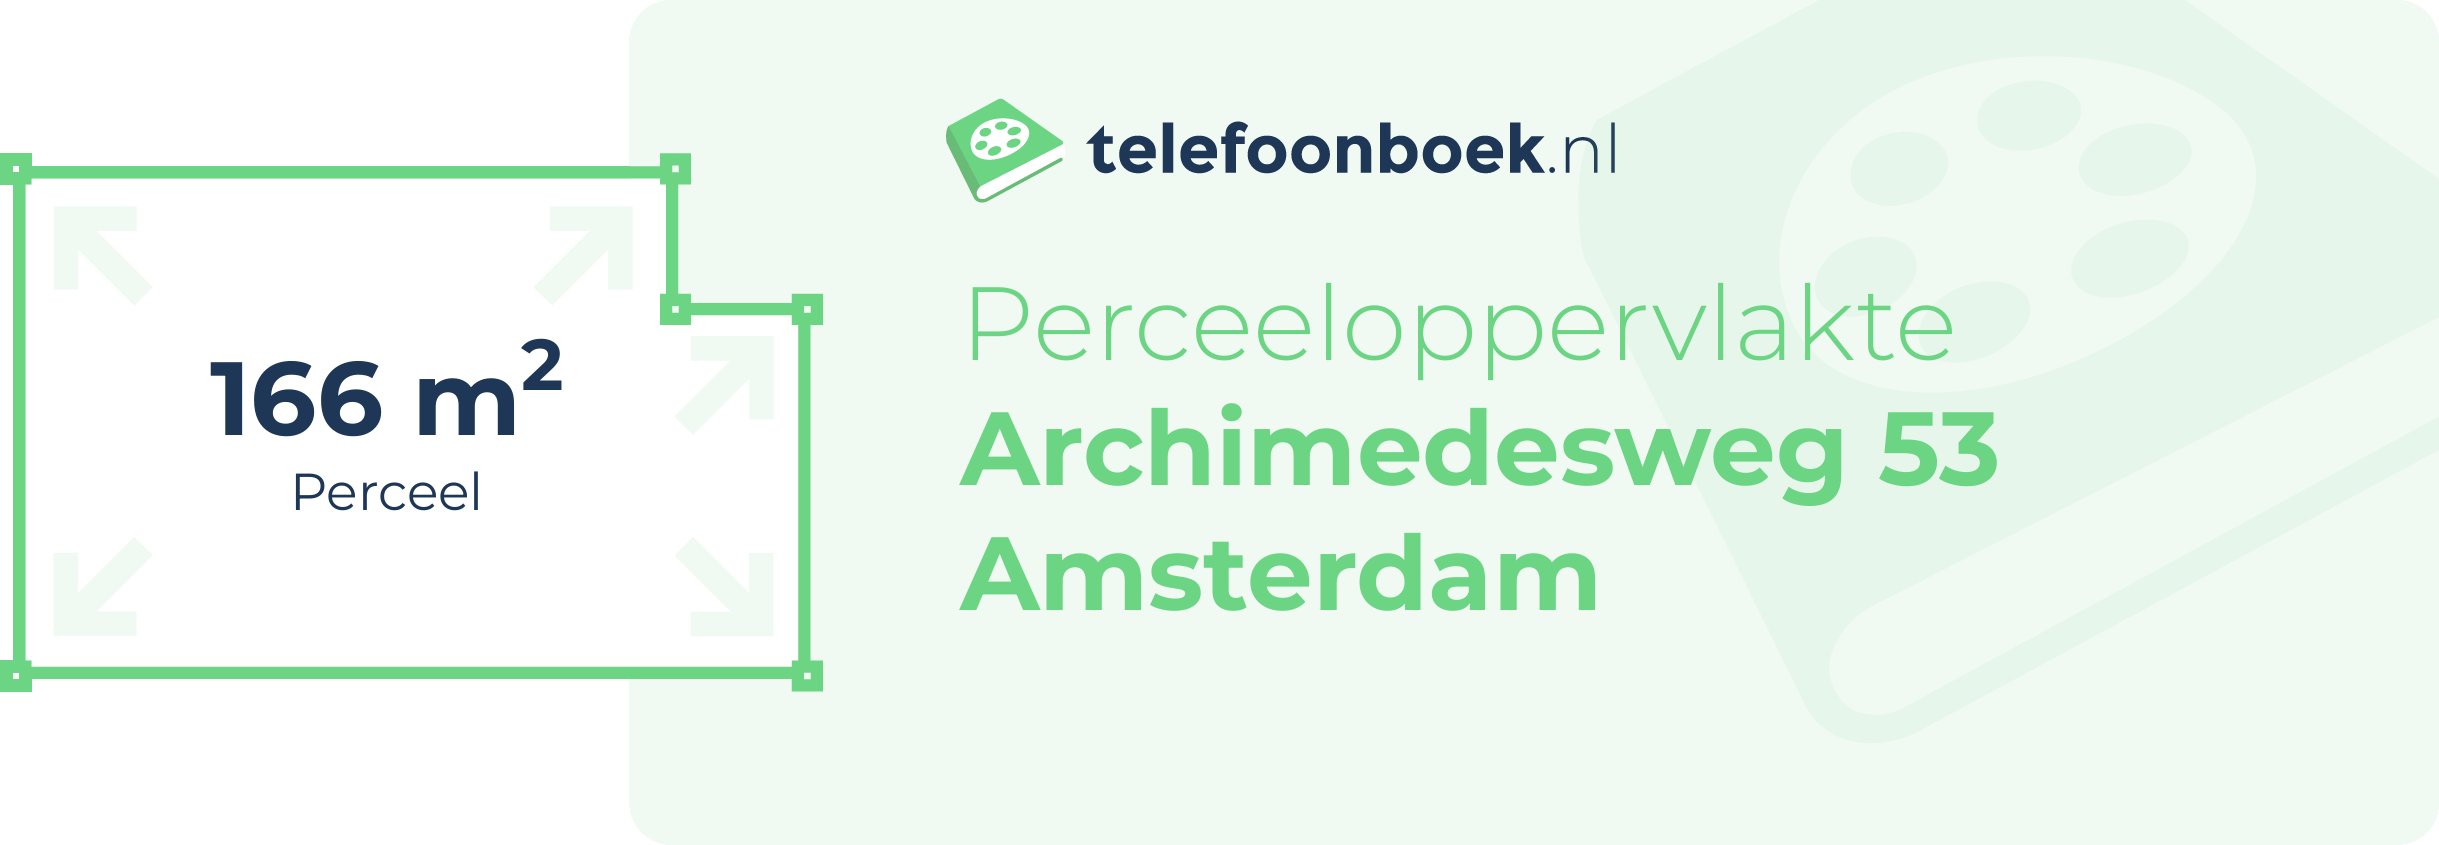 Perceeloppervlakte Archimedesweg 53 Amsterdam